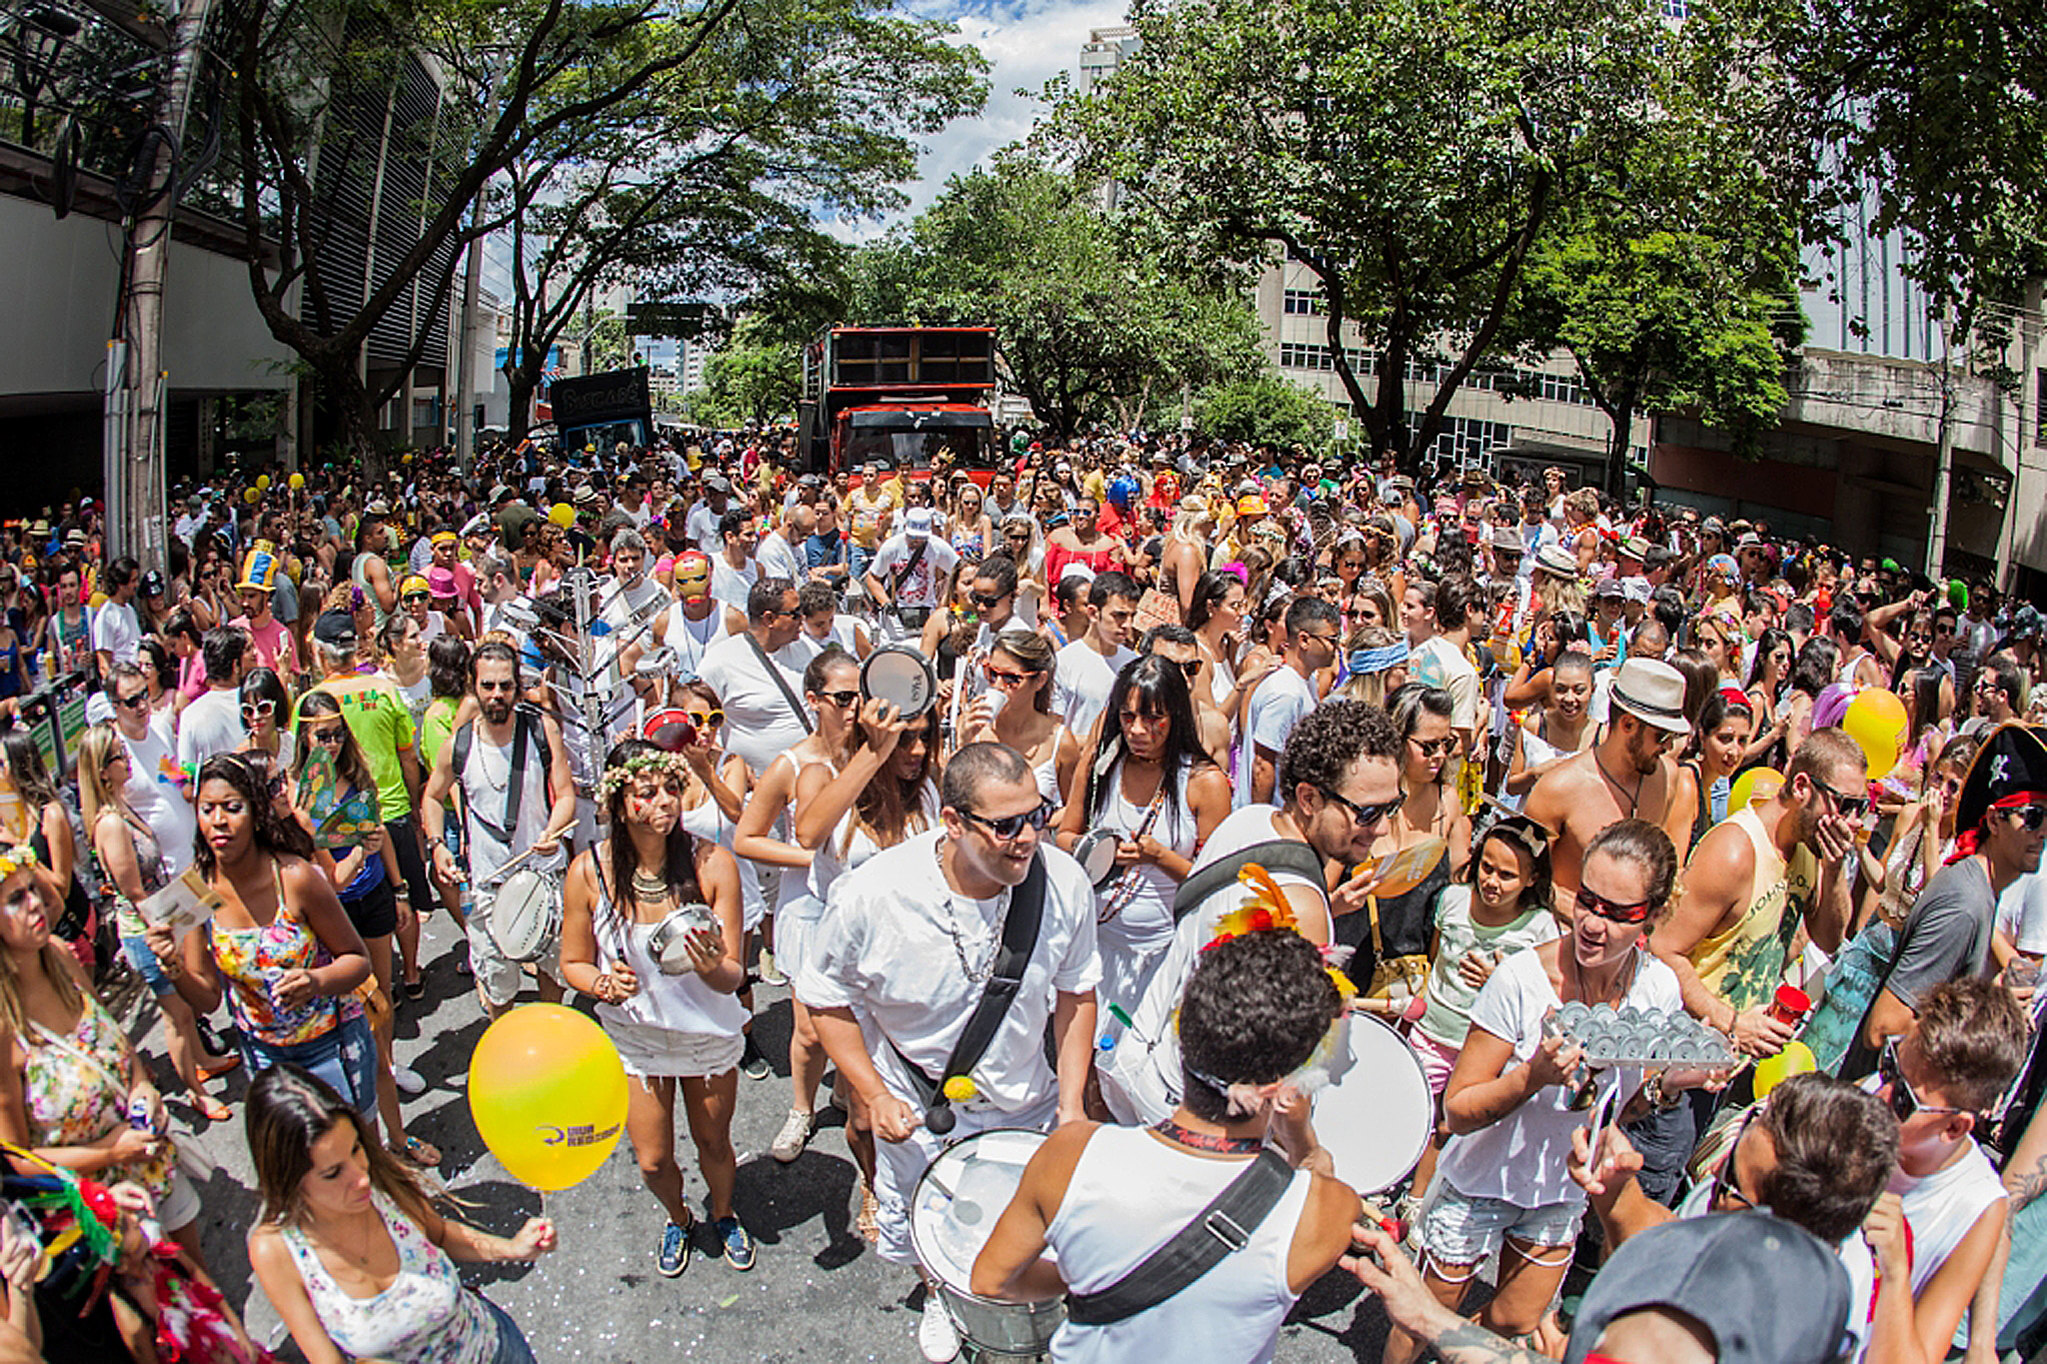 No Rio, carnavalescos debatem crescimento do carnaval de rua no país